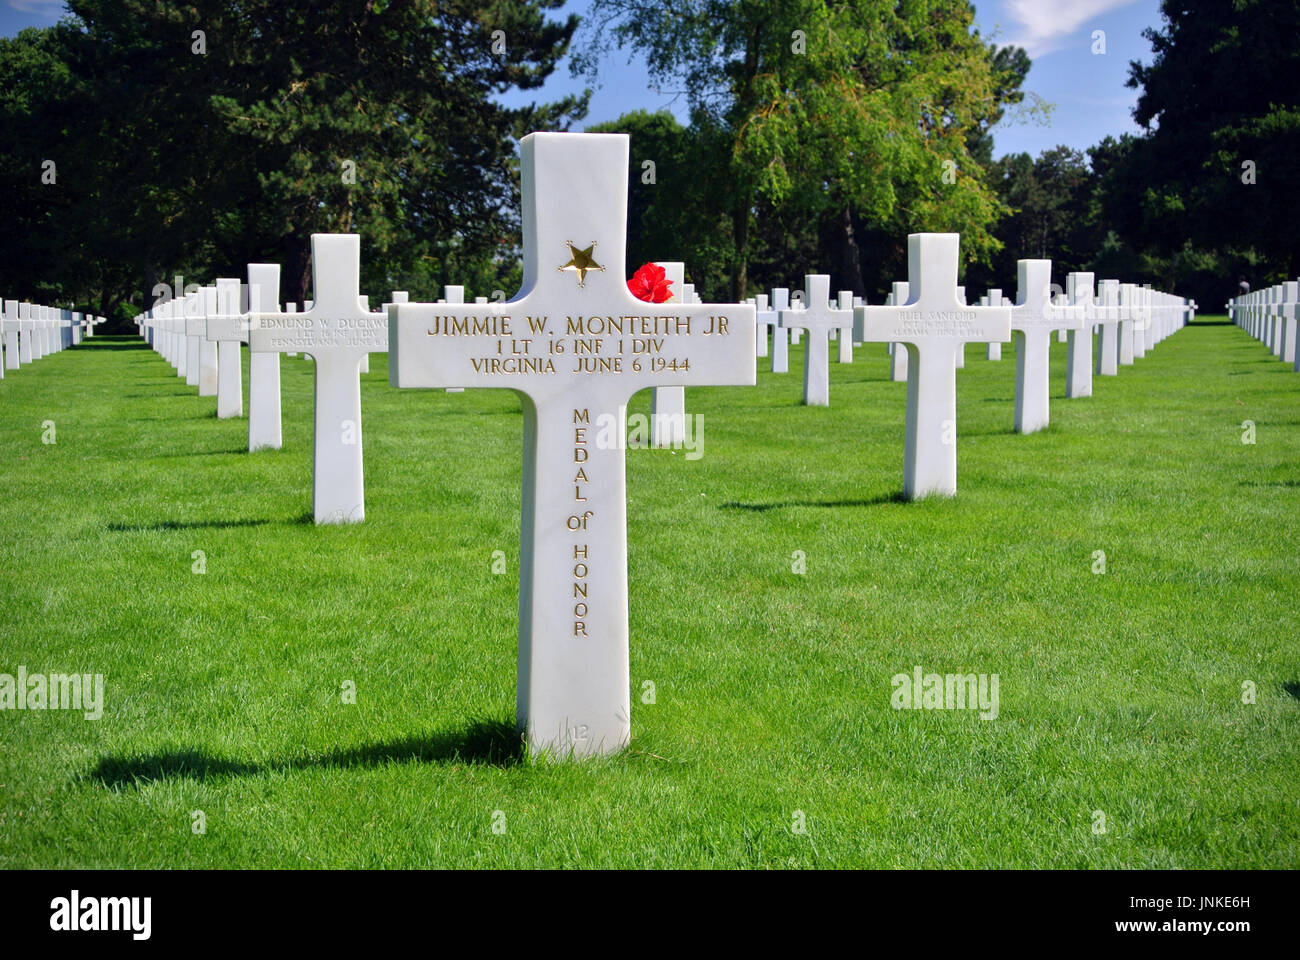 Tombe de Jimmie W. Monteith Jr, 16e Régiment d'infanterie, récipiendaire de la médaille d'honneur, cimetière américain de Normandie, France Banque D'Images